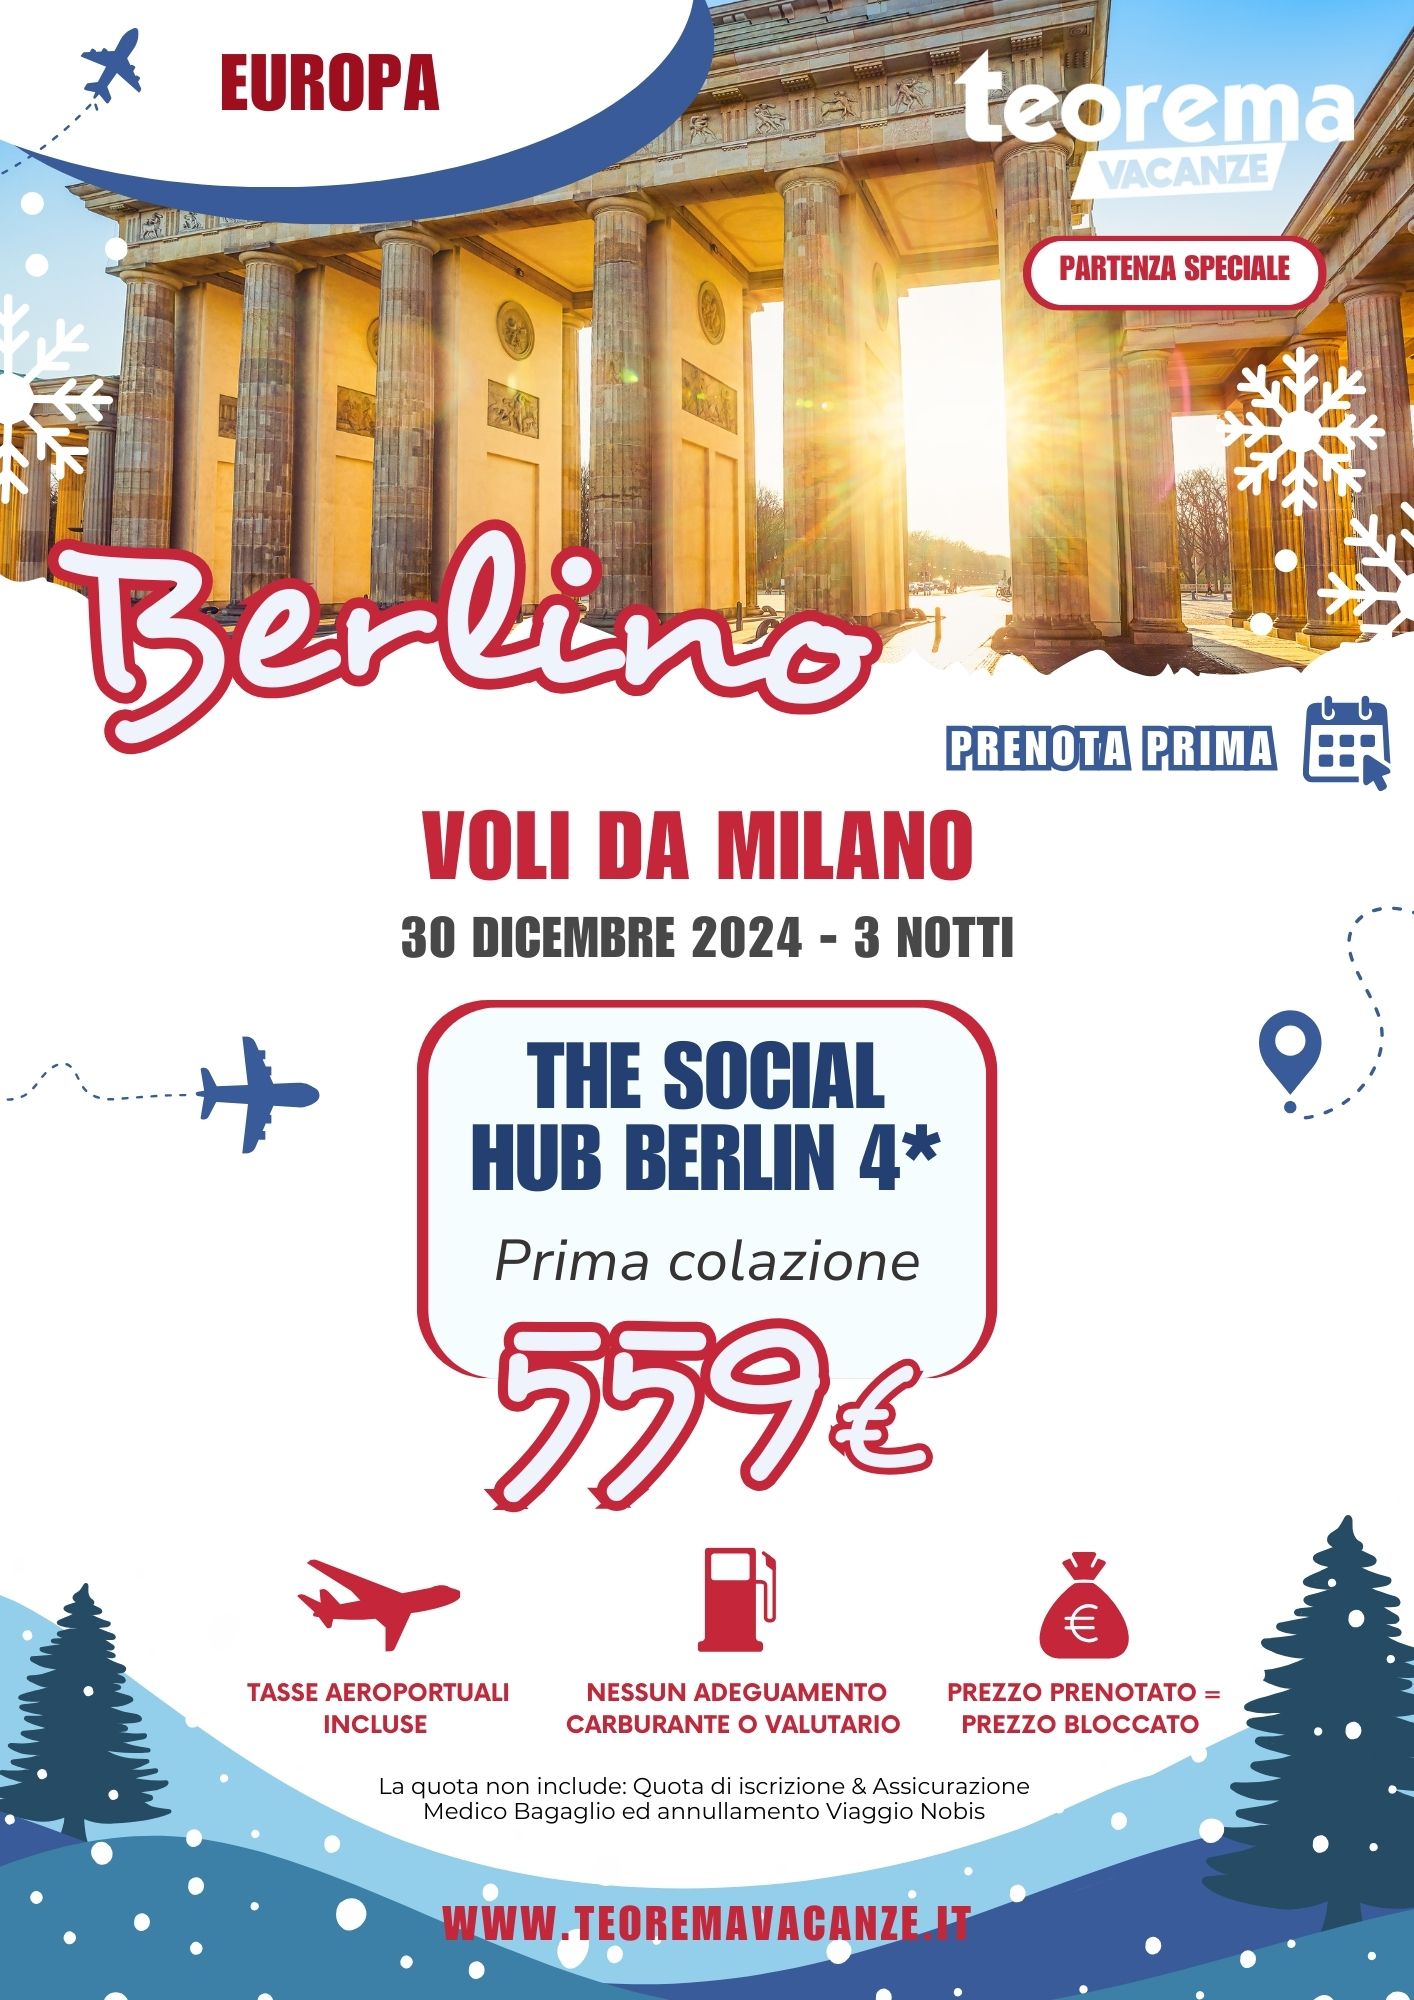 TEOREMA WINTER 2025 -  BERLINO DA MILANO